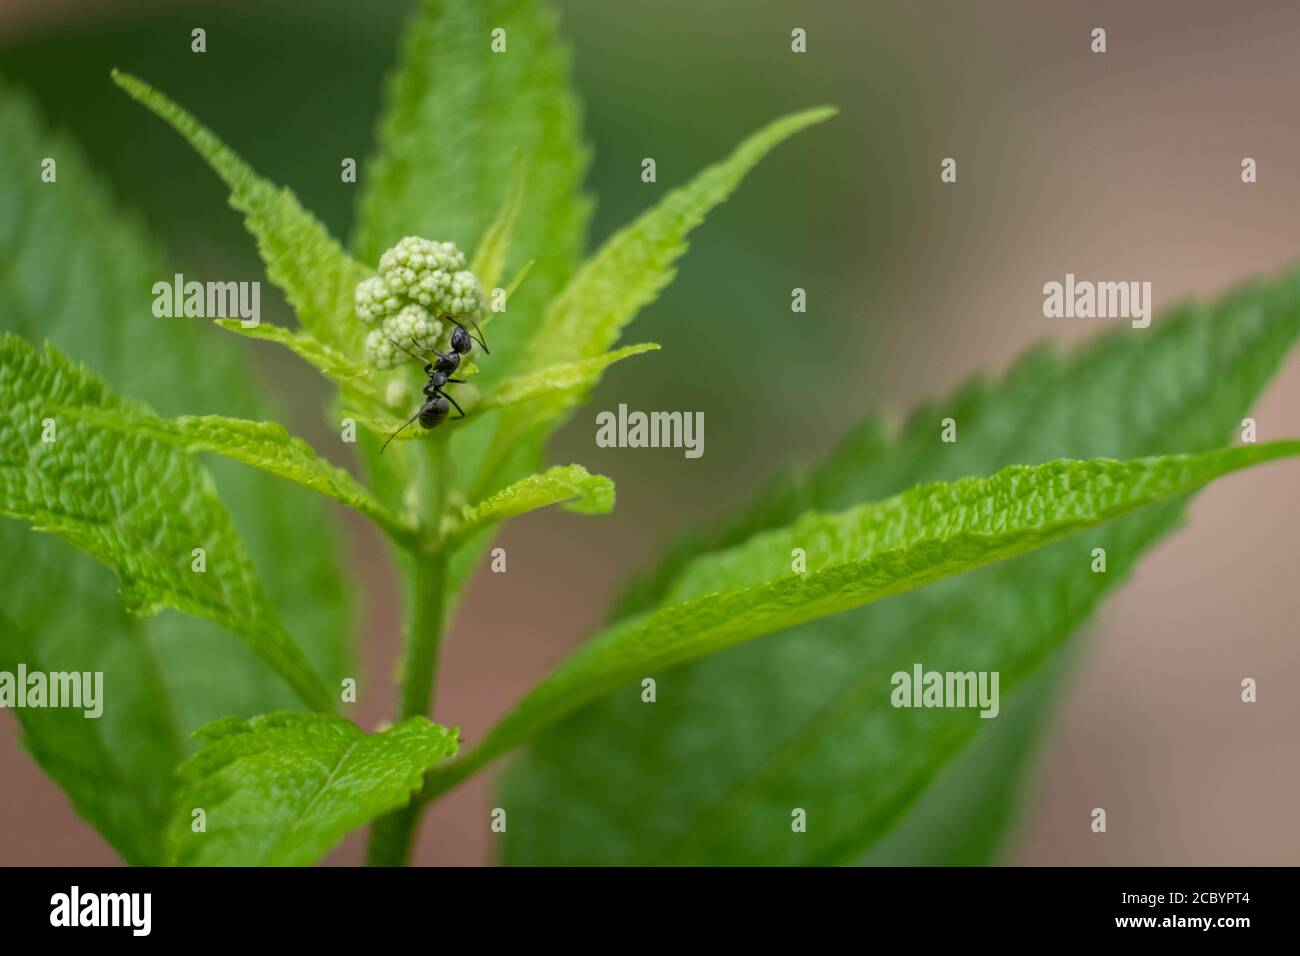 Eine Ameisenart klettert auf eine Blütenknospe einer üppigen grünen Pflanze. Stockfoto